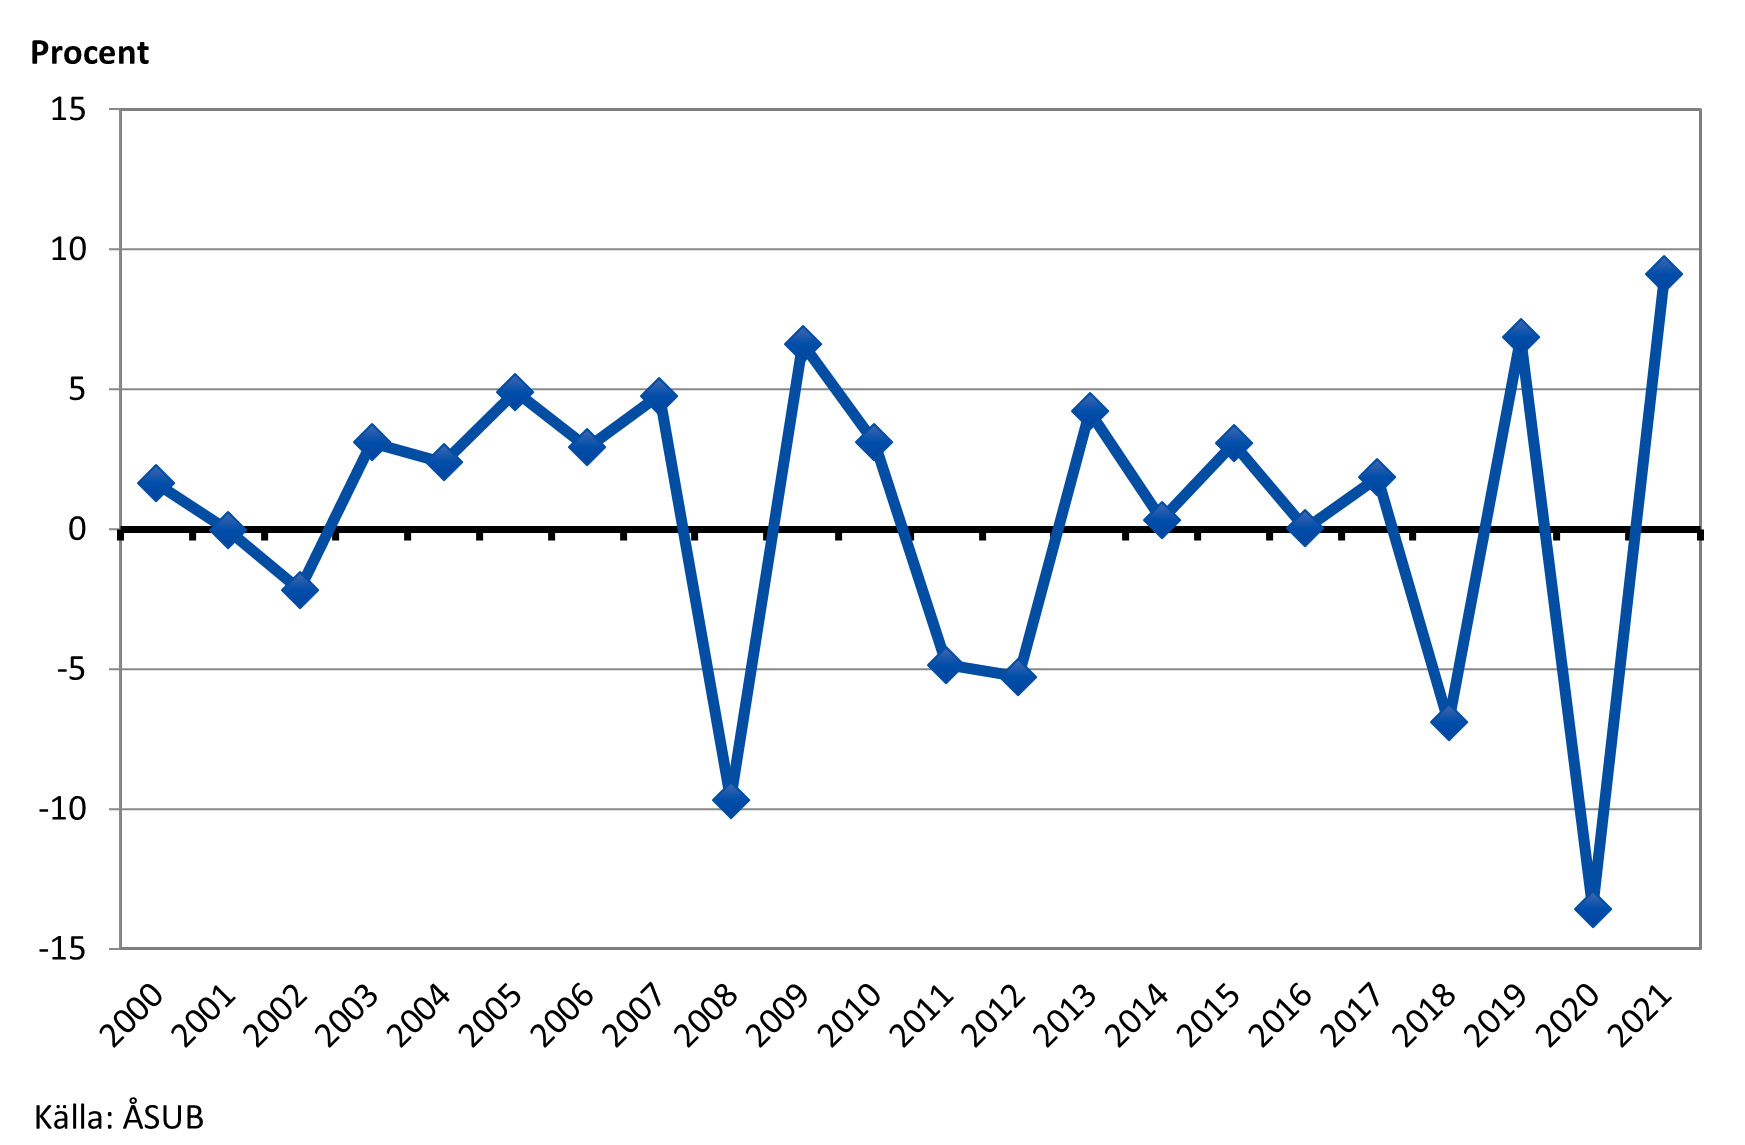 Årlig BNP-tillväxt 2000-2021 (fasta priser)